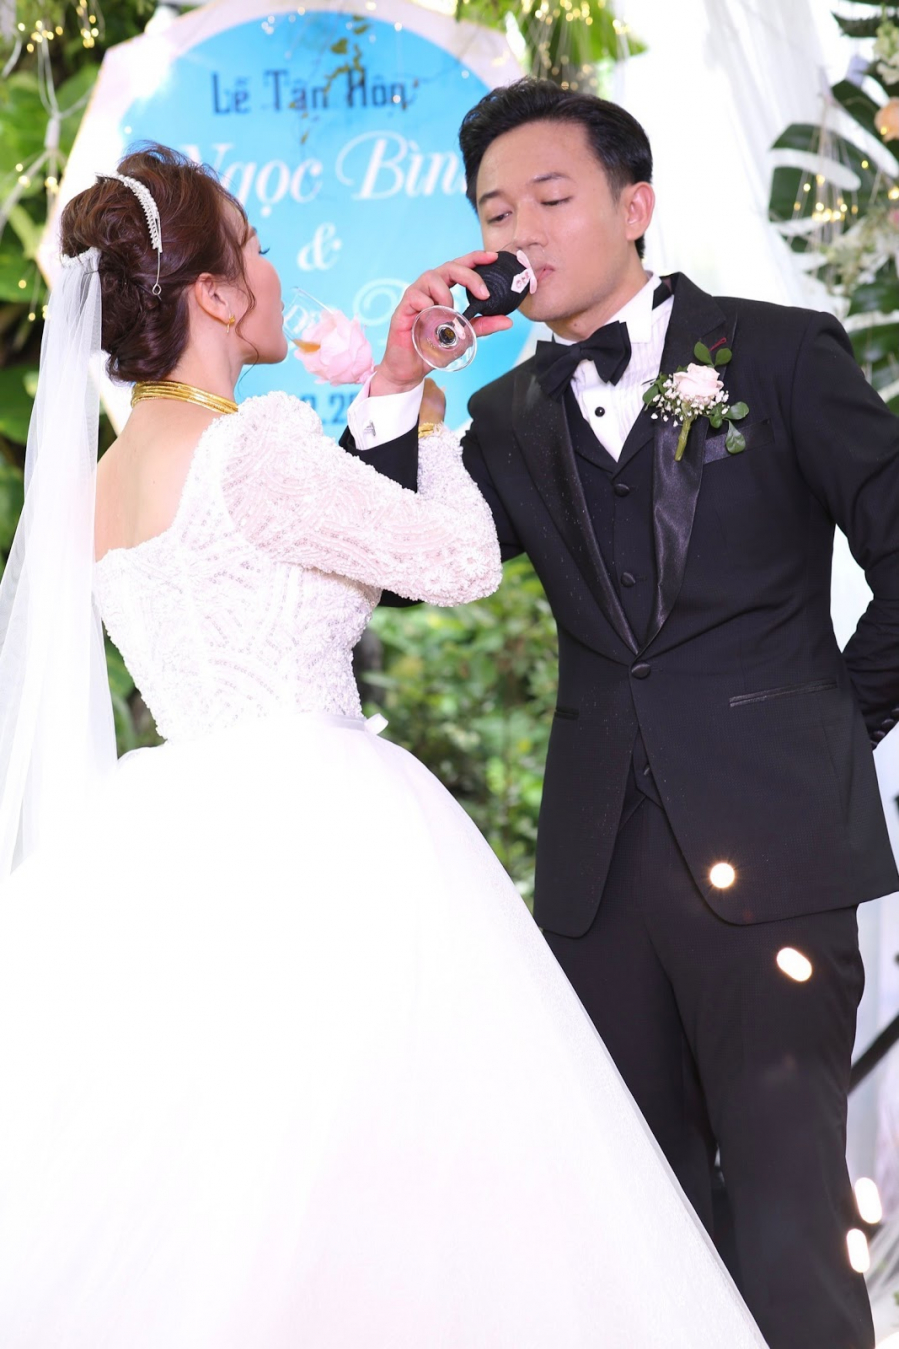 Chú rể Quý Bình và cô dâu Ngọc Tiền uống rượu giao bôi trong buổi tiệc đãi khách.